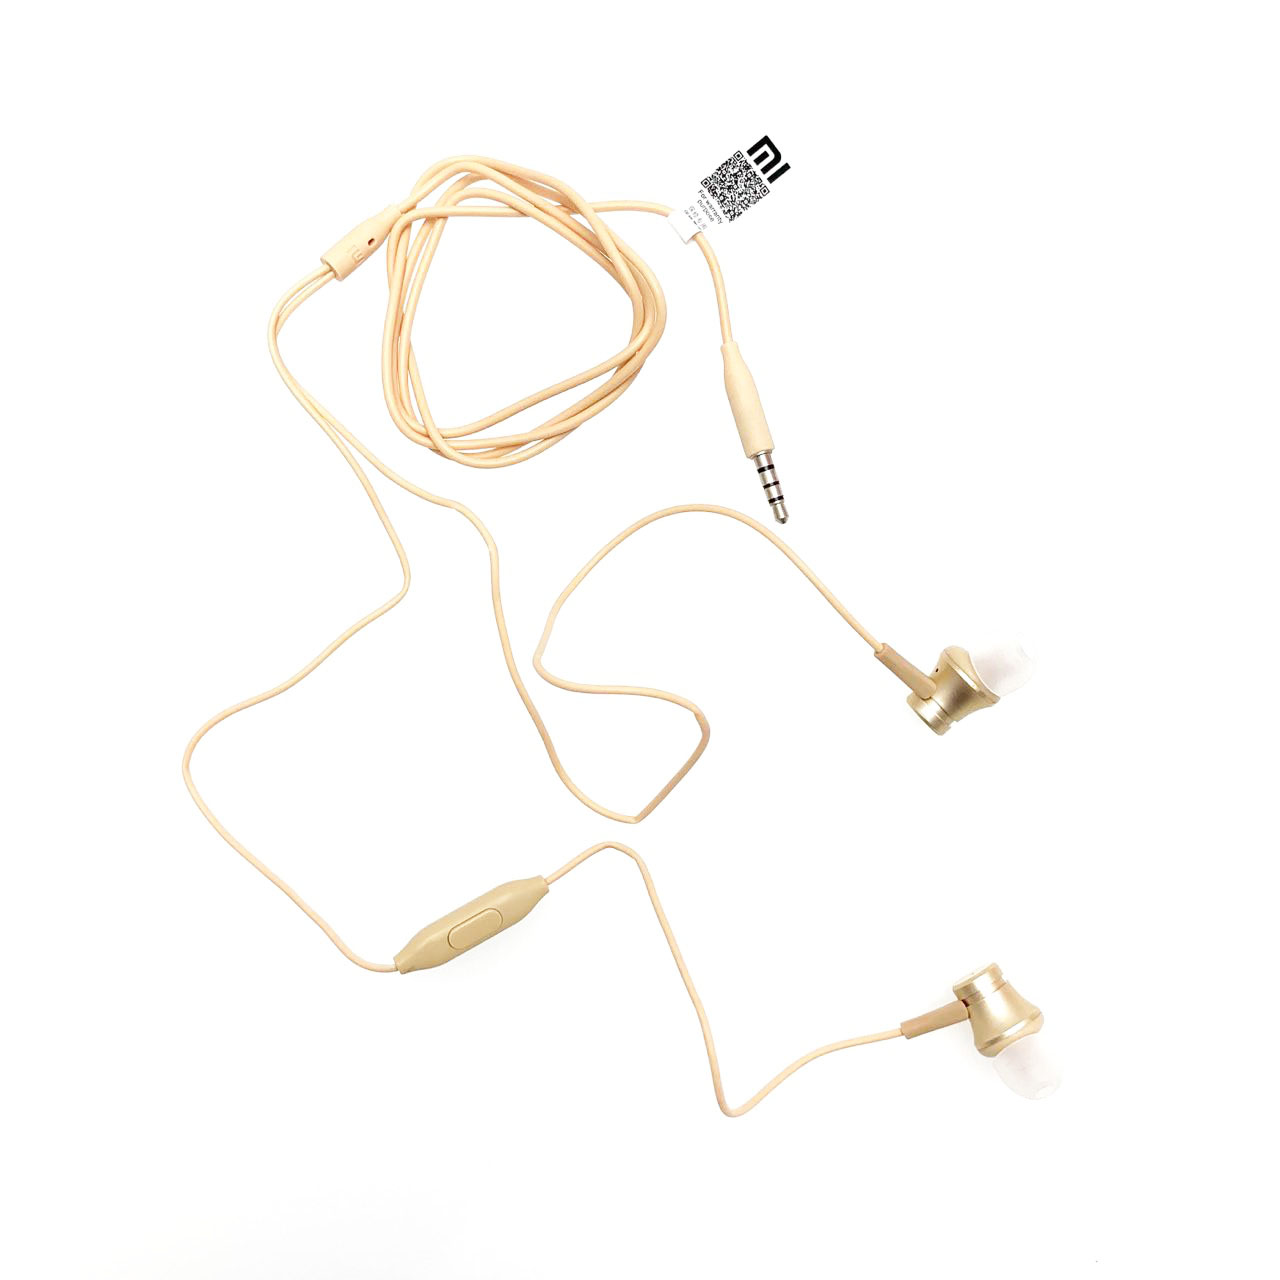 Гарнитура (наушники с микрофоном) проводная, XIAOMI YDJC01JY, цвет золотистый (ZBW4399IN).